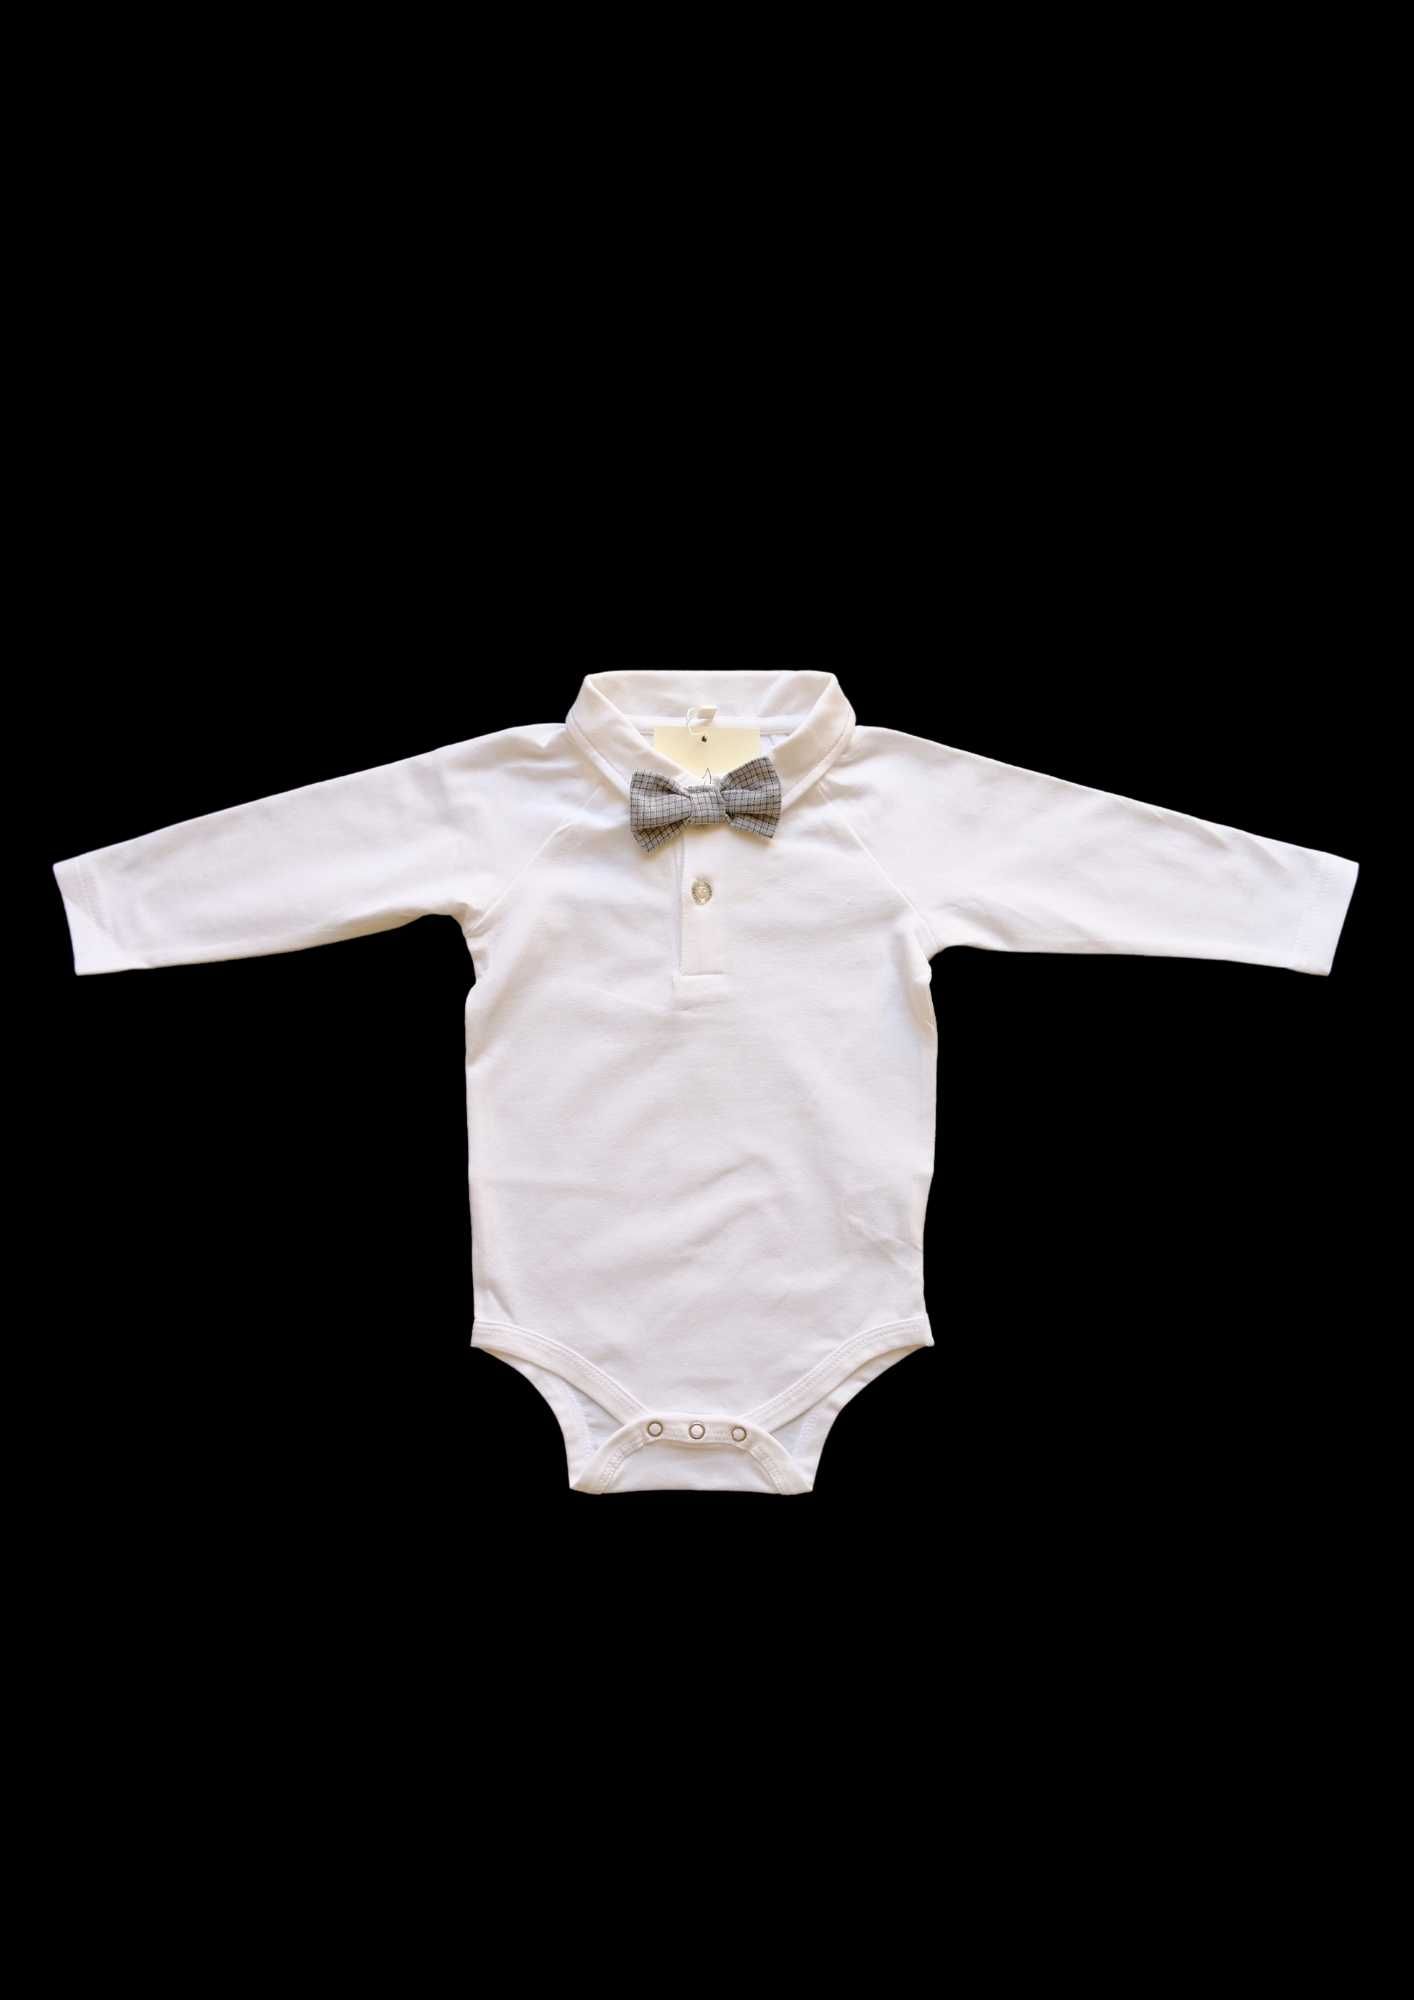 Официален бебешки костюм за момченца за всеки празник и събитие